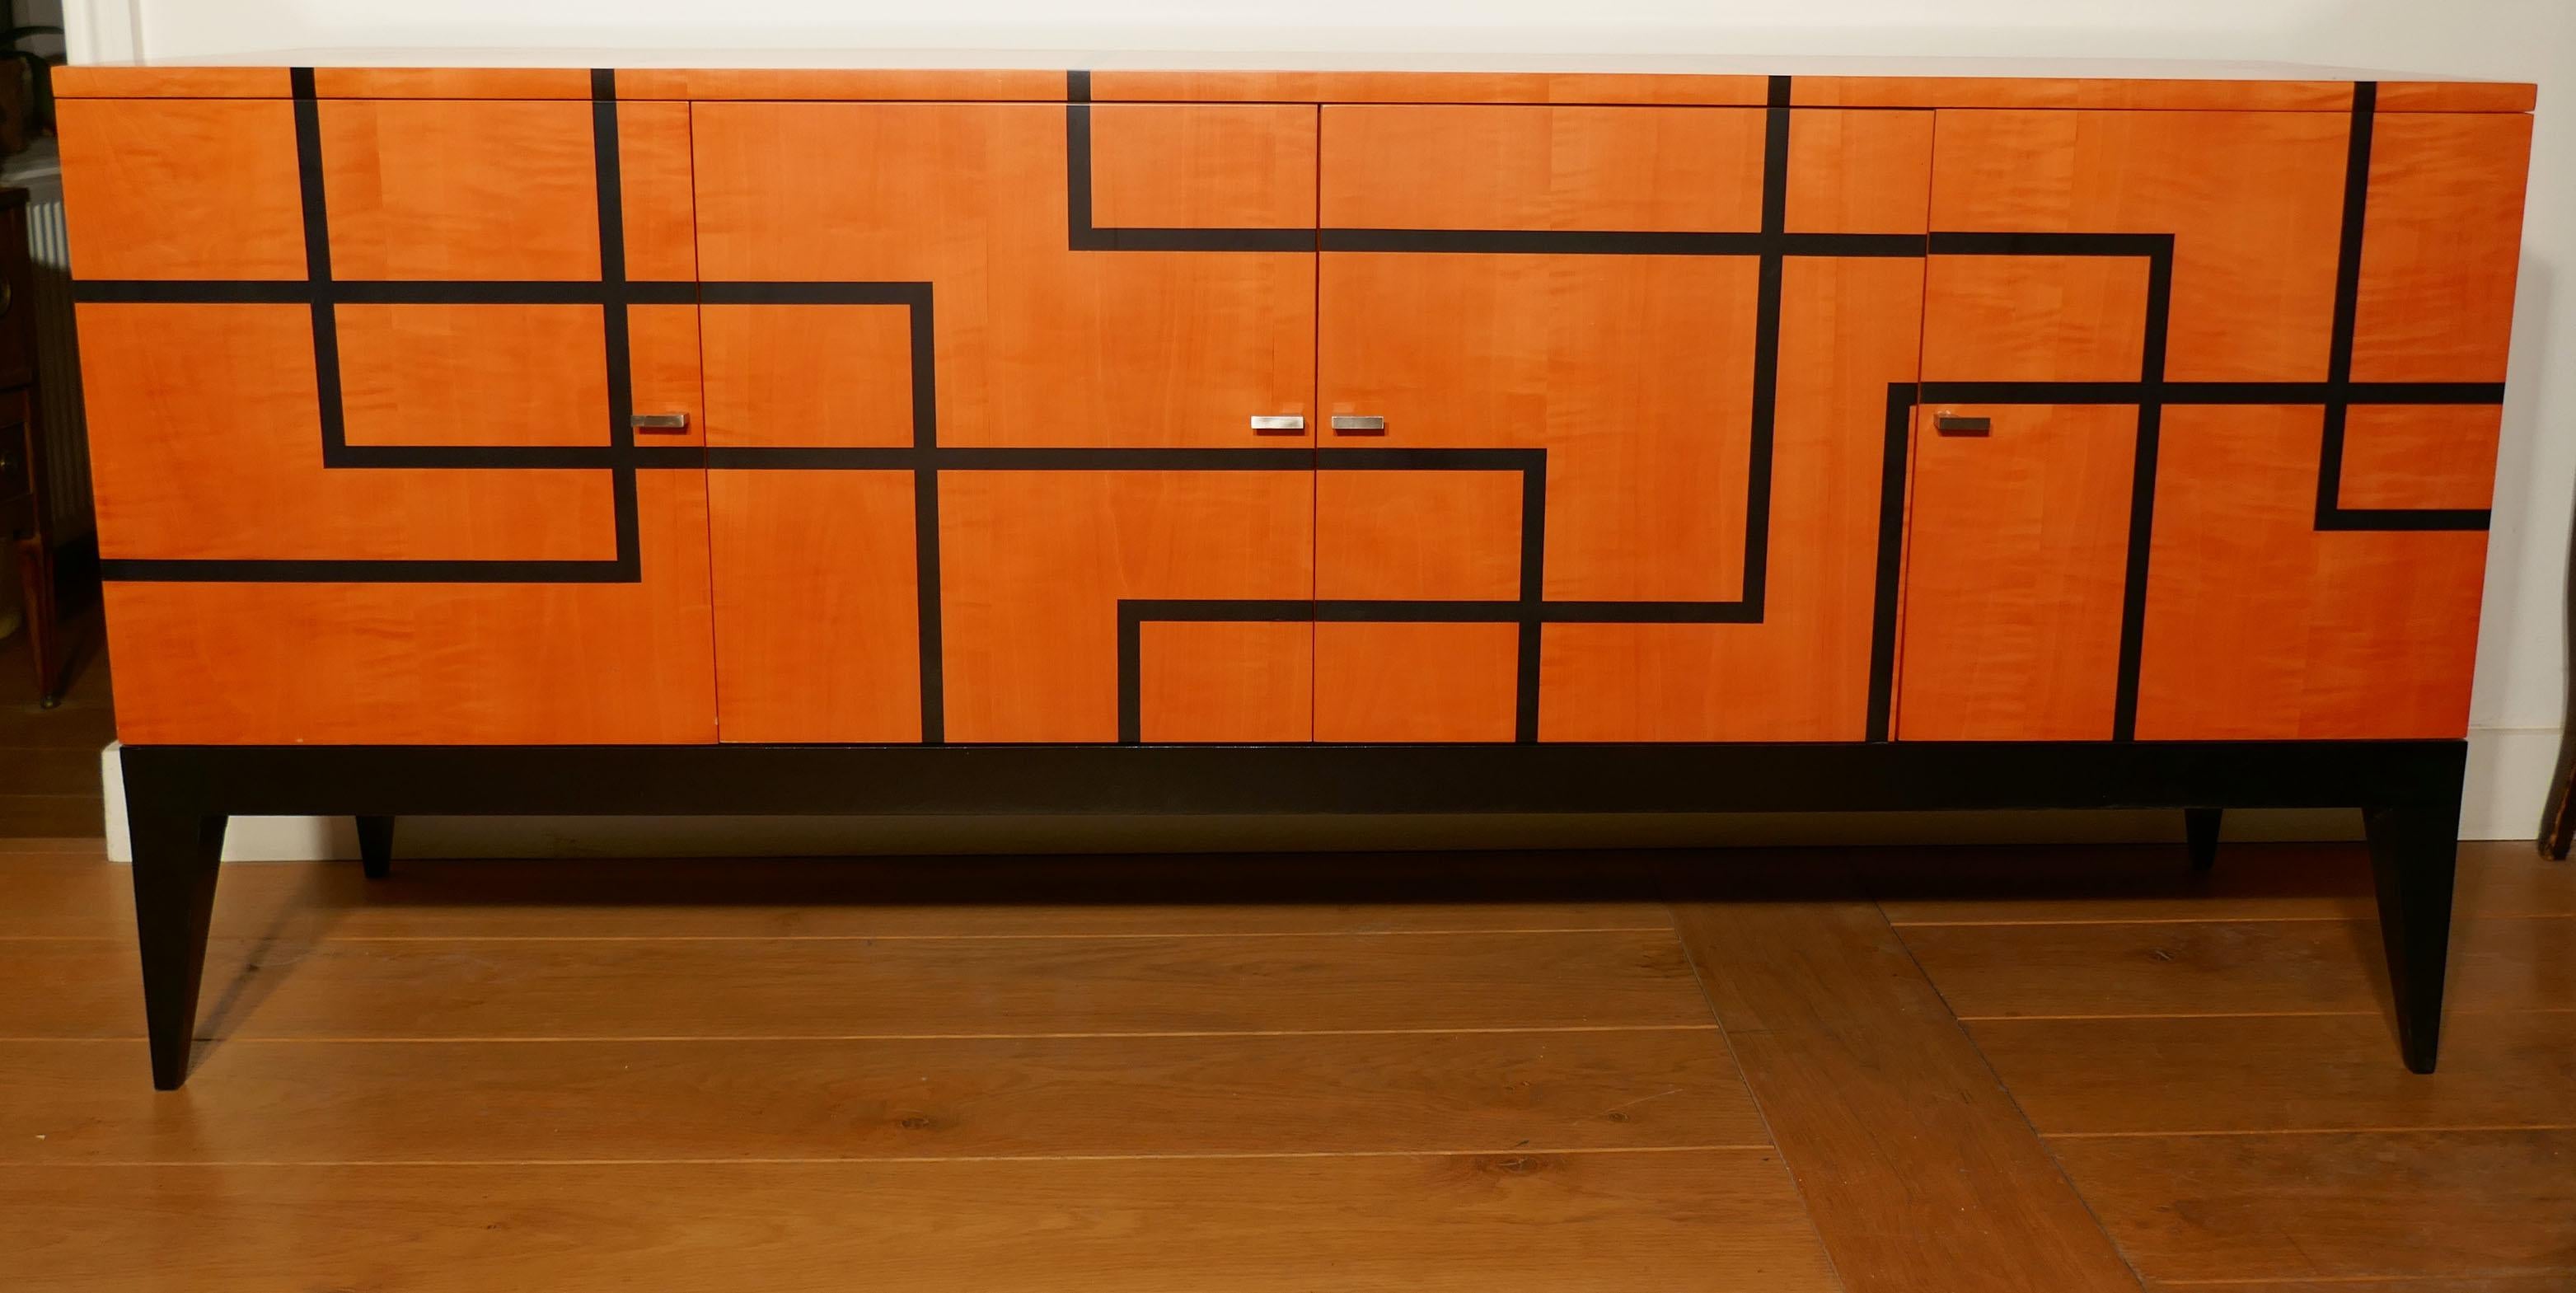 Buffet « Fillets » en sycomore orange et noir.
Ouvert en modèle à quatre portes conçu par Aymeric Lefort pour le bureau Hermès à Paris en 2012.
Le buffet s'ouvre sur quatre portes, il y a quatre étagères au milieu, derrière des portes en bois.
Cette